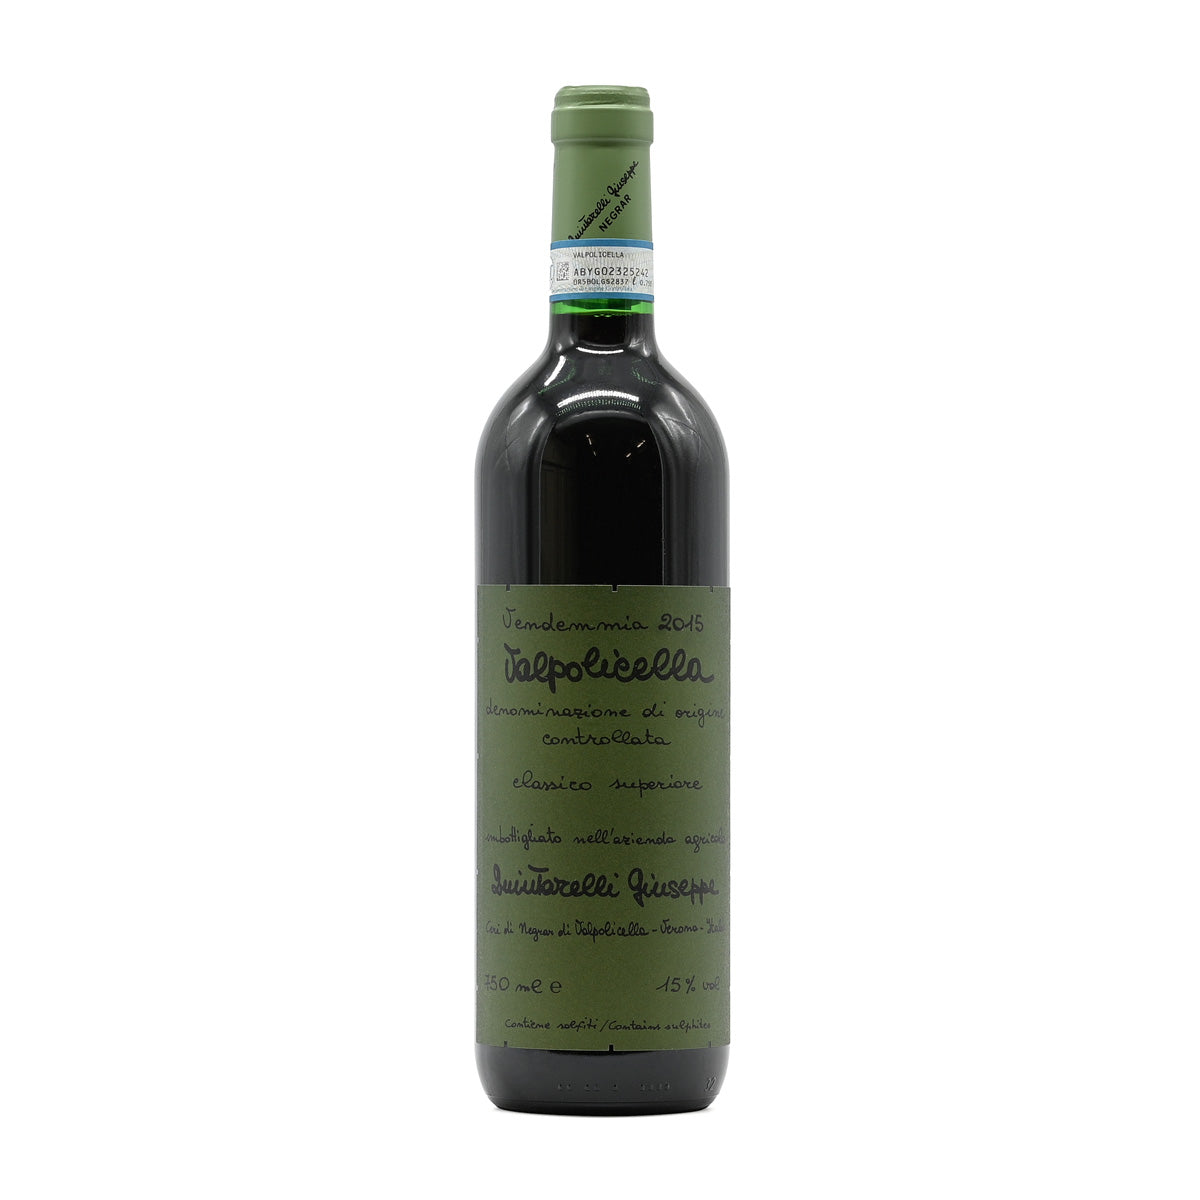 Giuseppe Quintarelli Valpolicella Classico Superiore 2015, 750ml Italian red wine, from Valpolicella, Veneto, Italy – GDV Fine Wines, Hong Kong